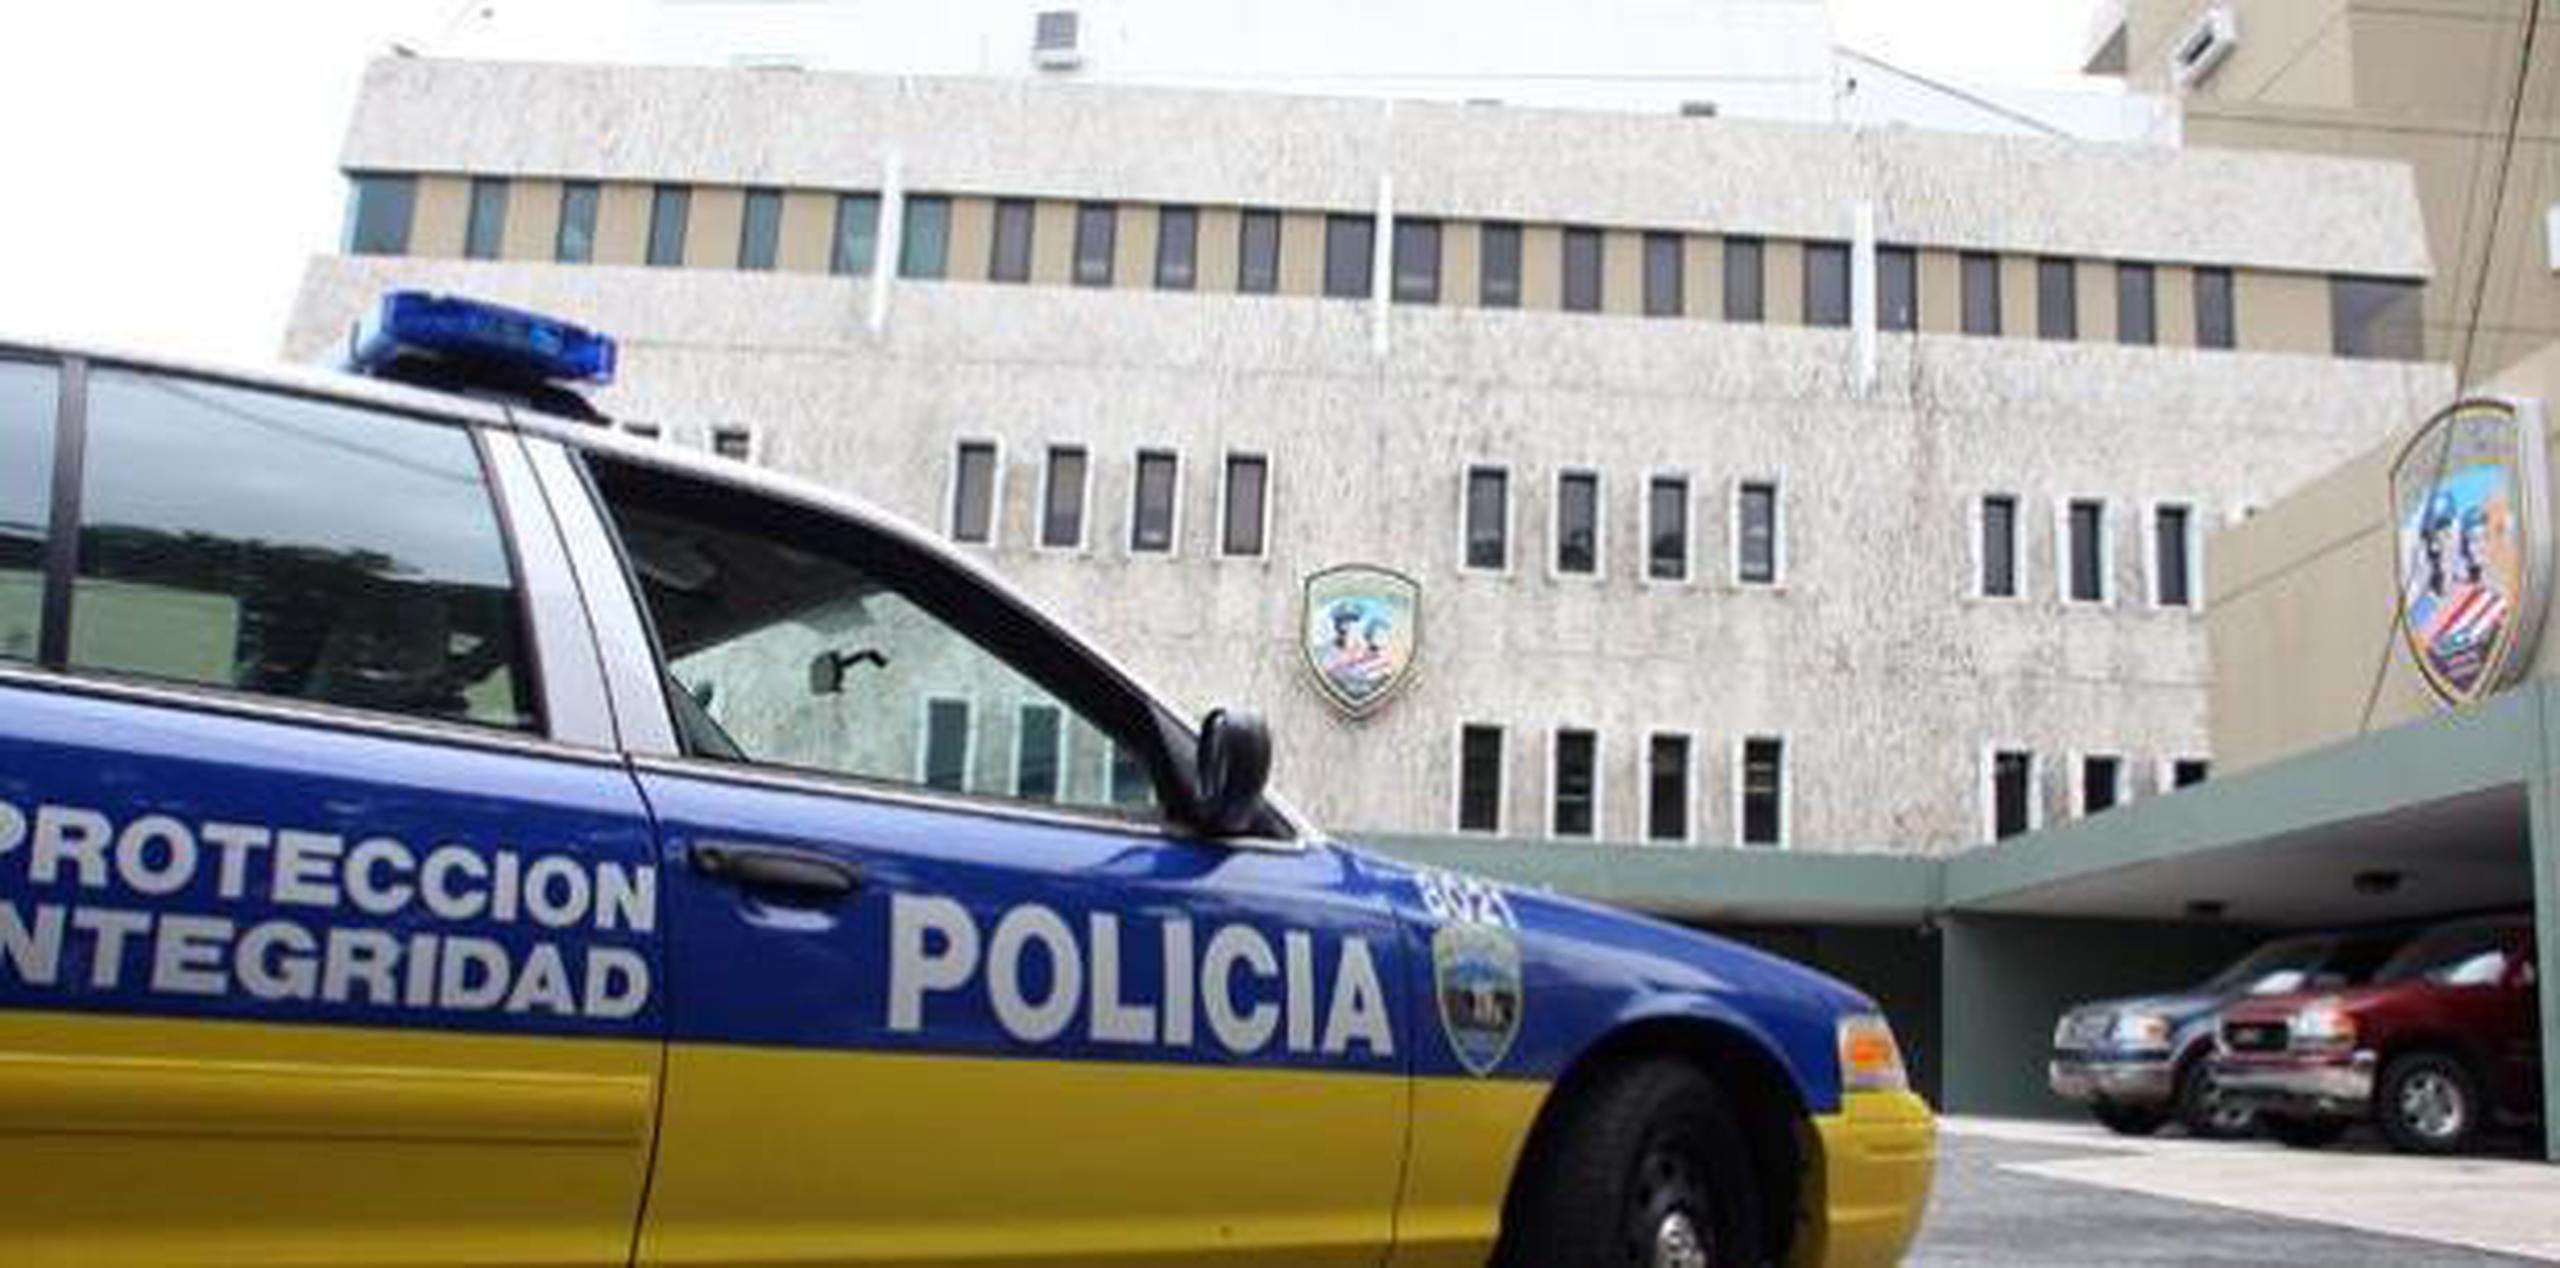 Agentes del Cuerpo de Investigaciones Criminales de San Juan investigan el incidente. (Archivo)